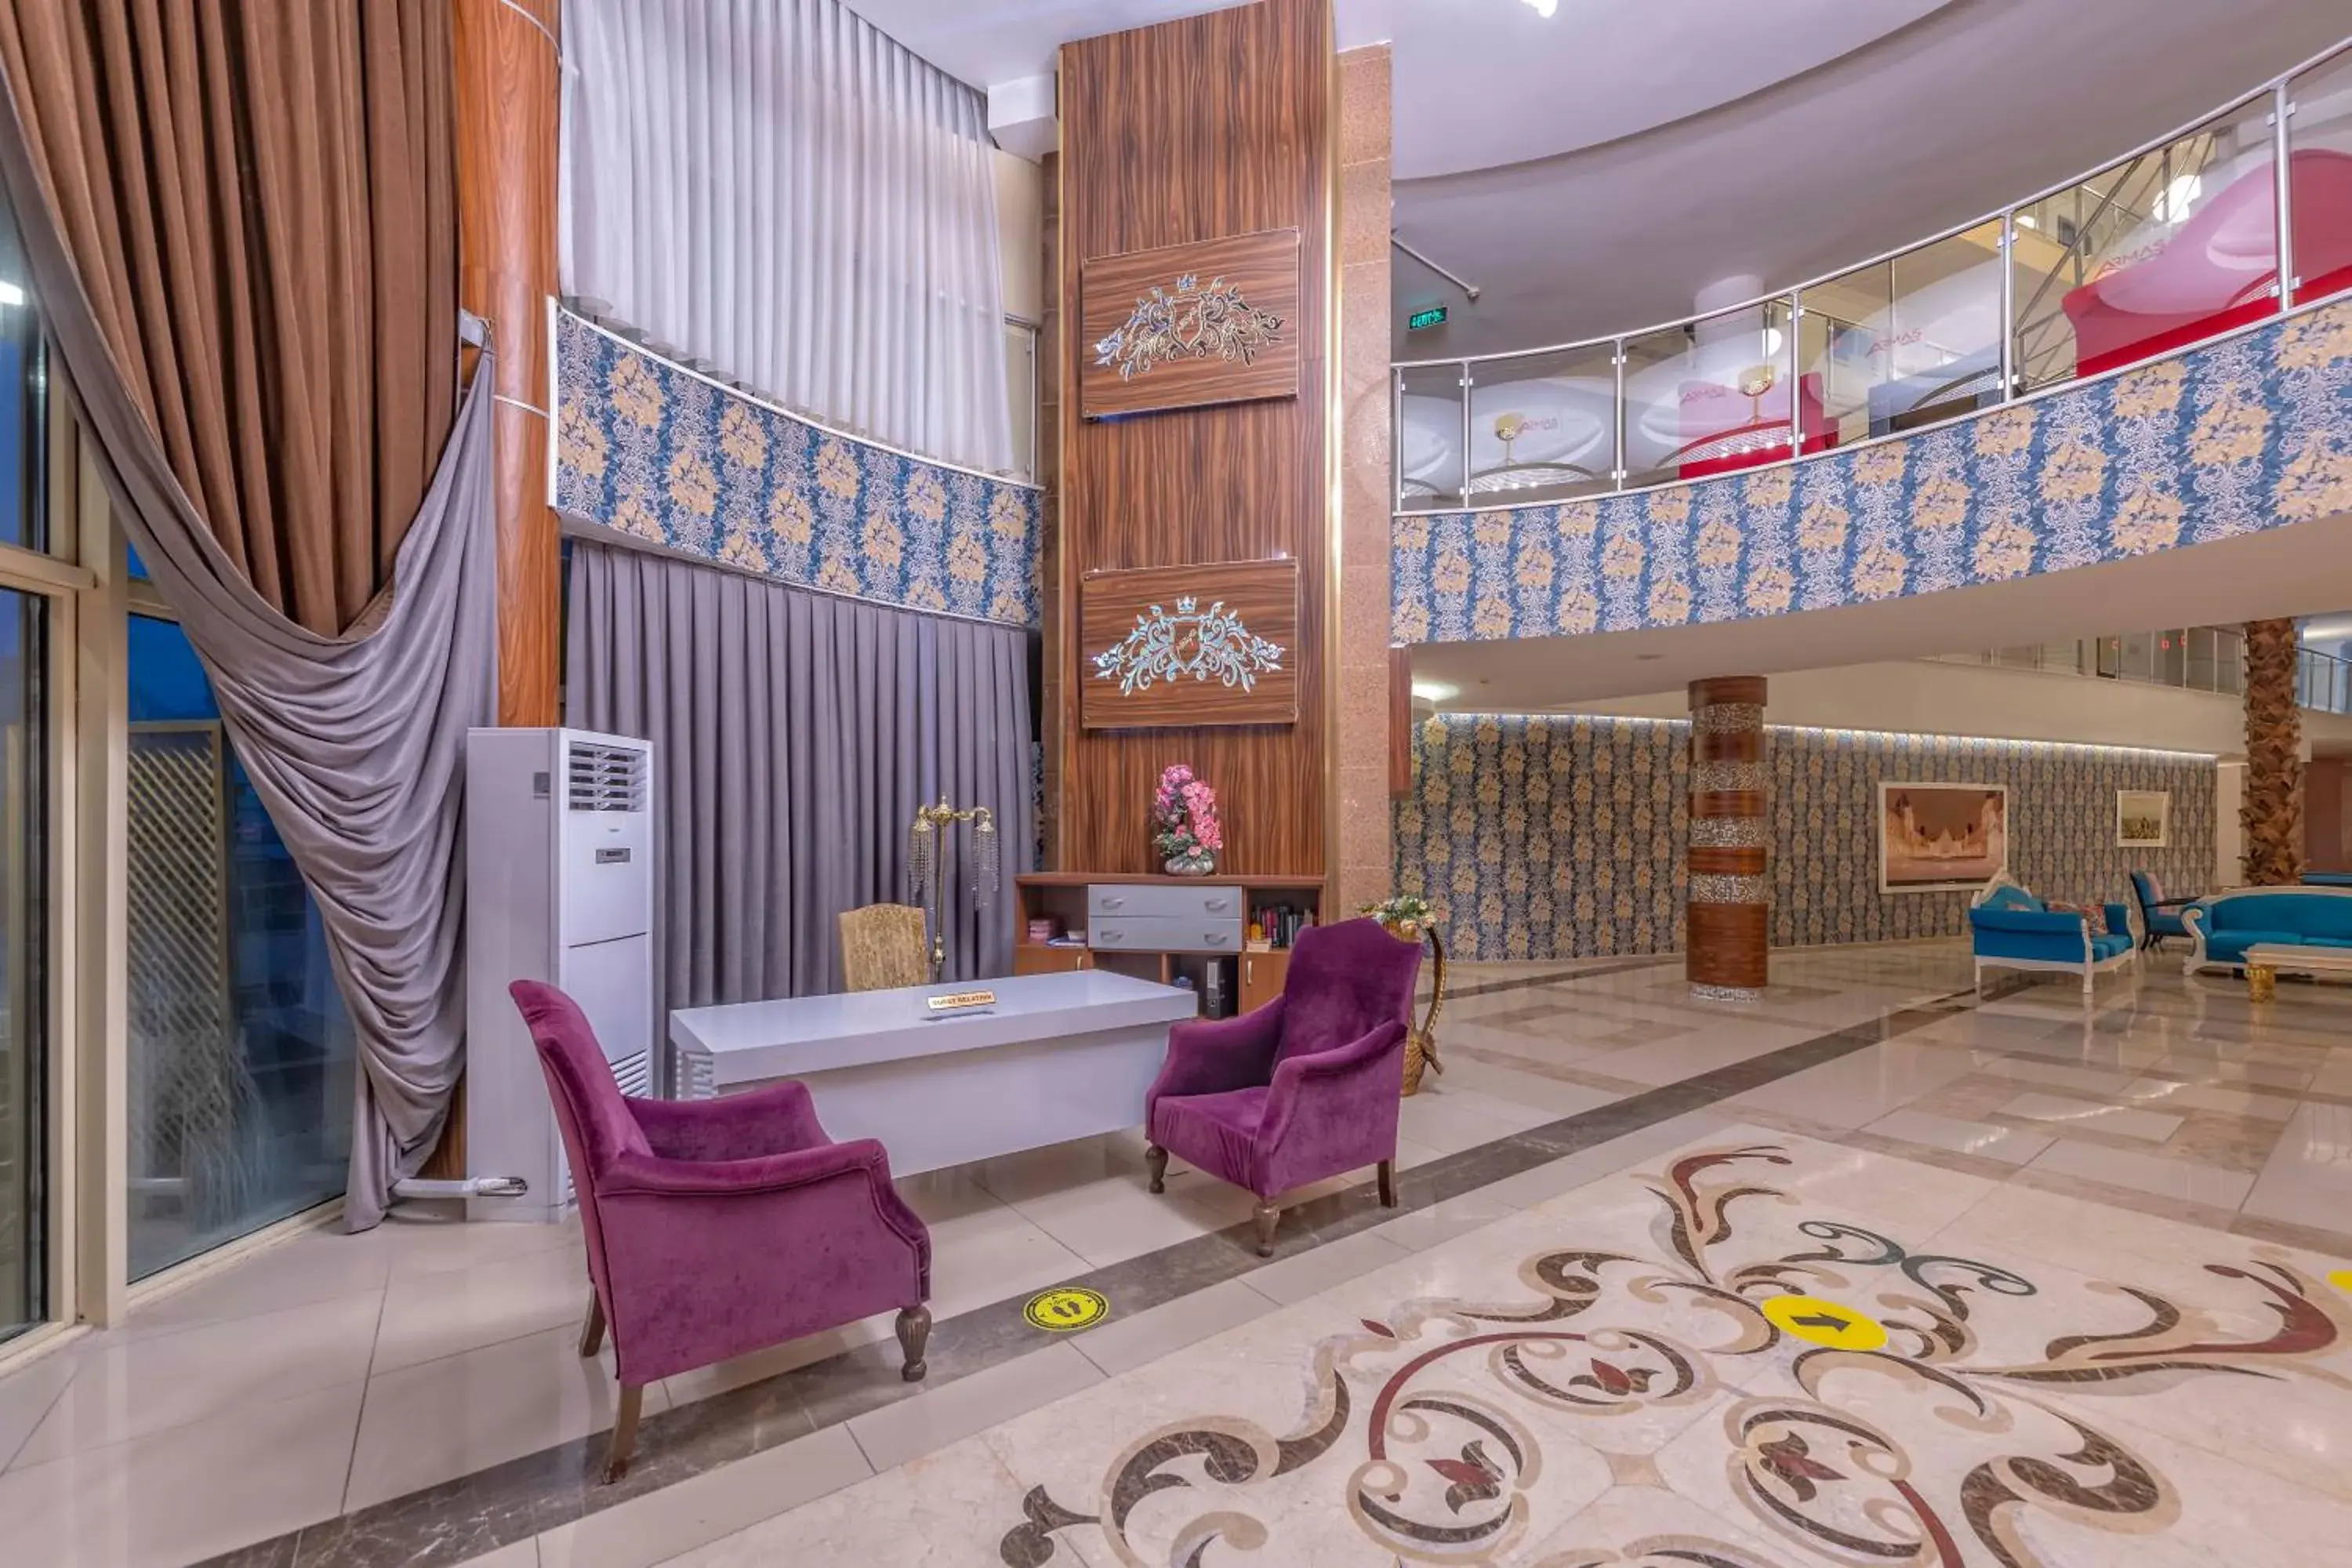 Lobby or reception, Lobby/Reception in Armas Beach Hotel